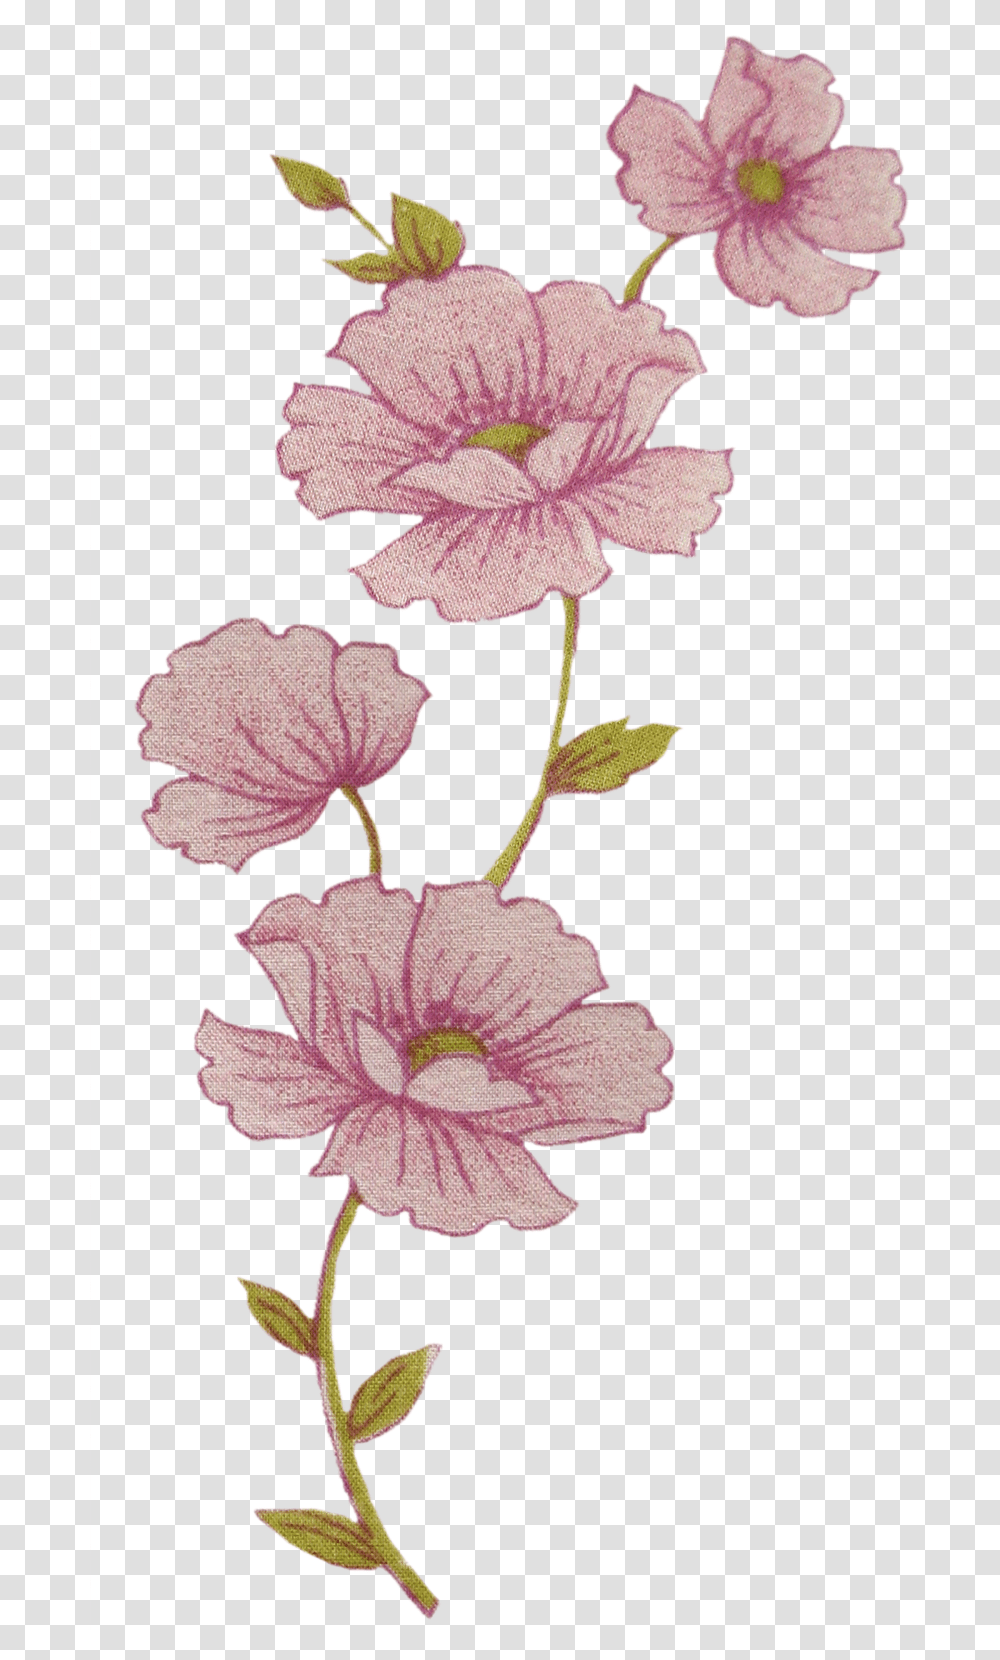 Flores De Tela Y Papel Rosas, Plant, Hibiscus, Flower, Blossom Transparent Png